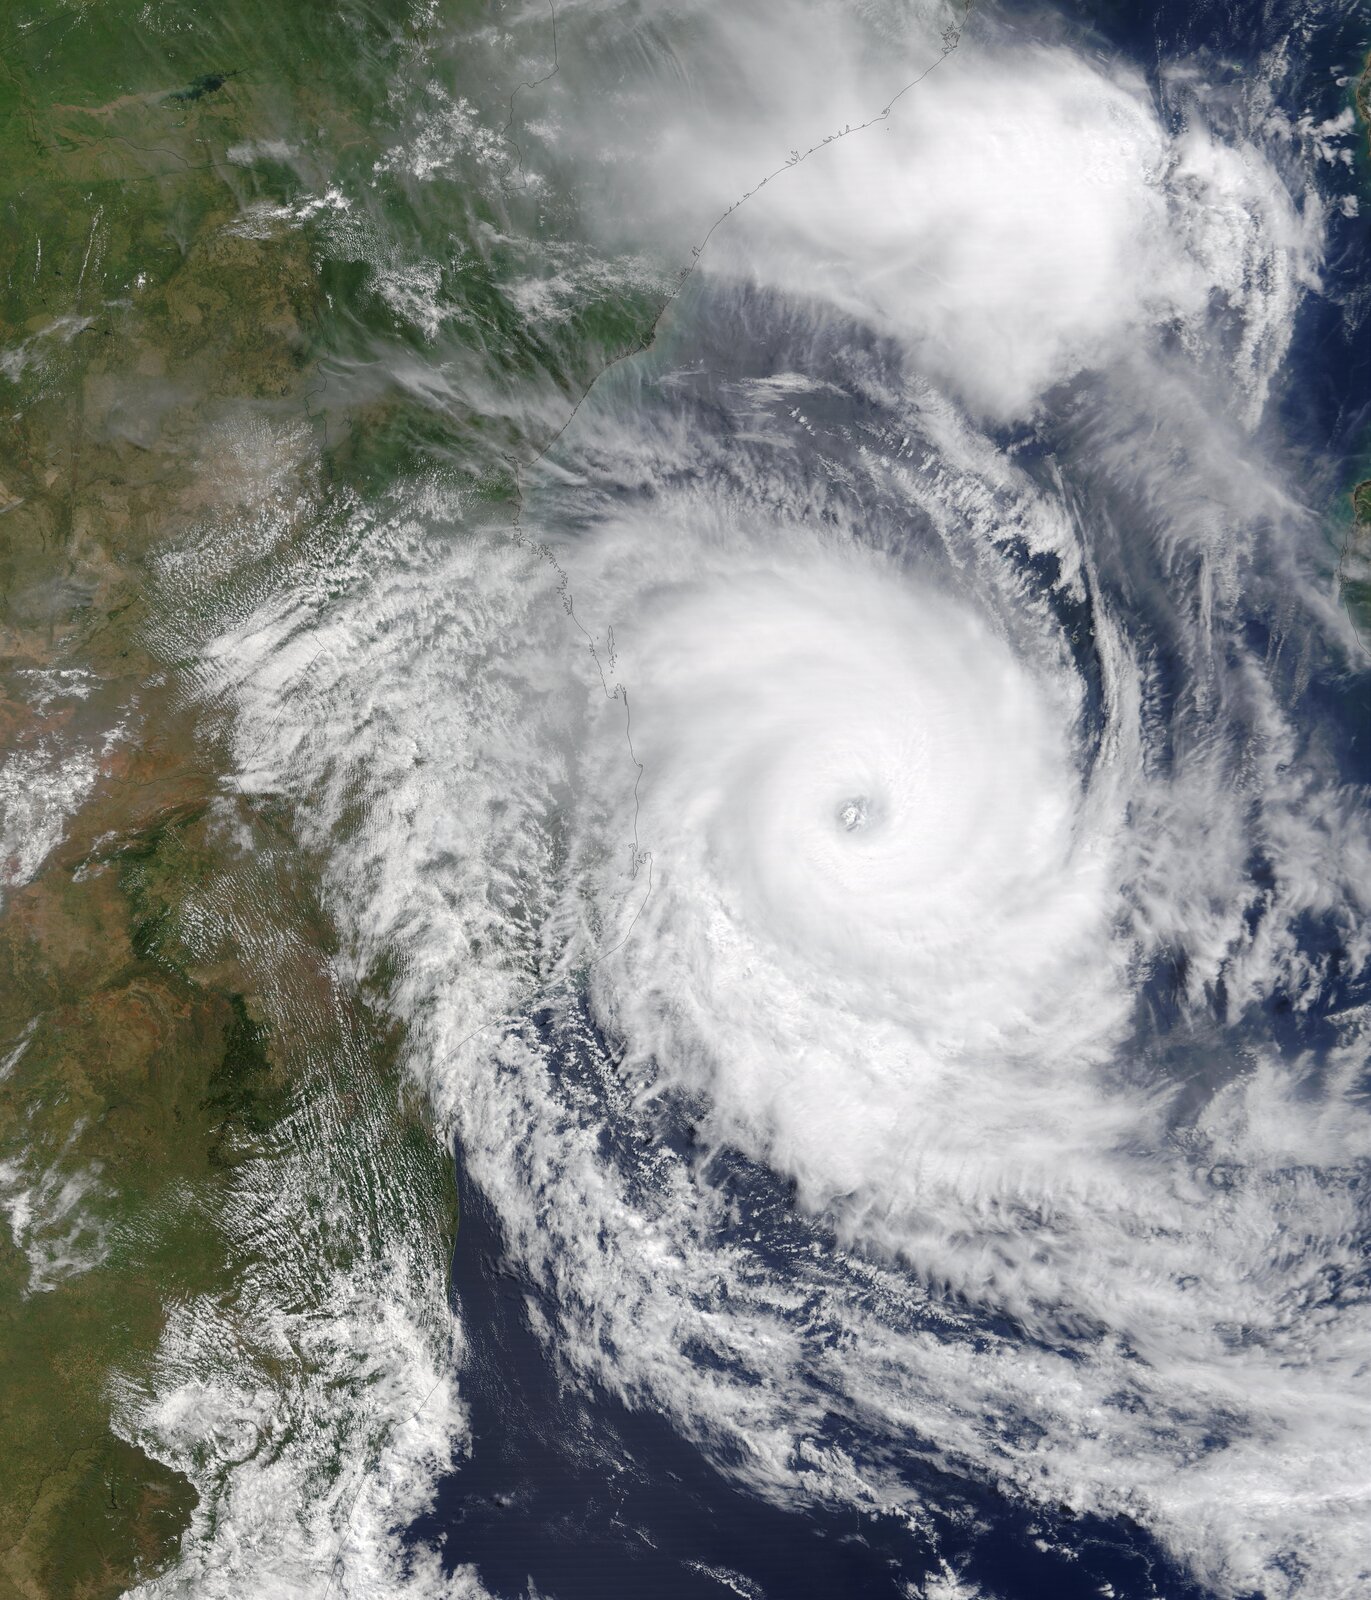 Zdjęcie satelitarne przedstawia wirujący cyklon widziany z góry. W centralnej części zdjęcia znajduje się skupisko wirujących białych chmur. Wewnątrz kręgu, które tworzą wirujące chmury, tworzy się lej. Pusta przestrzeń wewnątrz cyklonu to bezchmurny obszar nazywany okiem cyklonu.